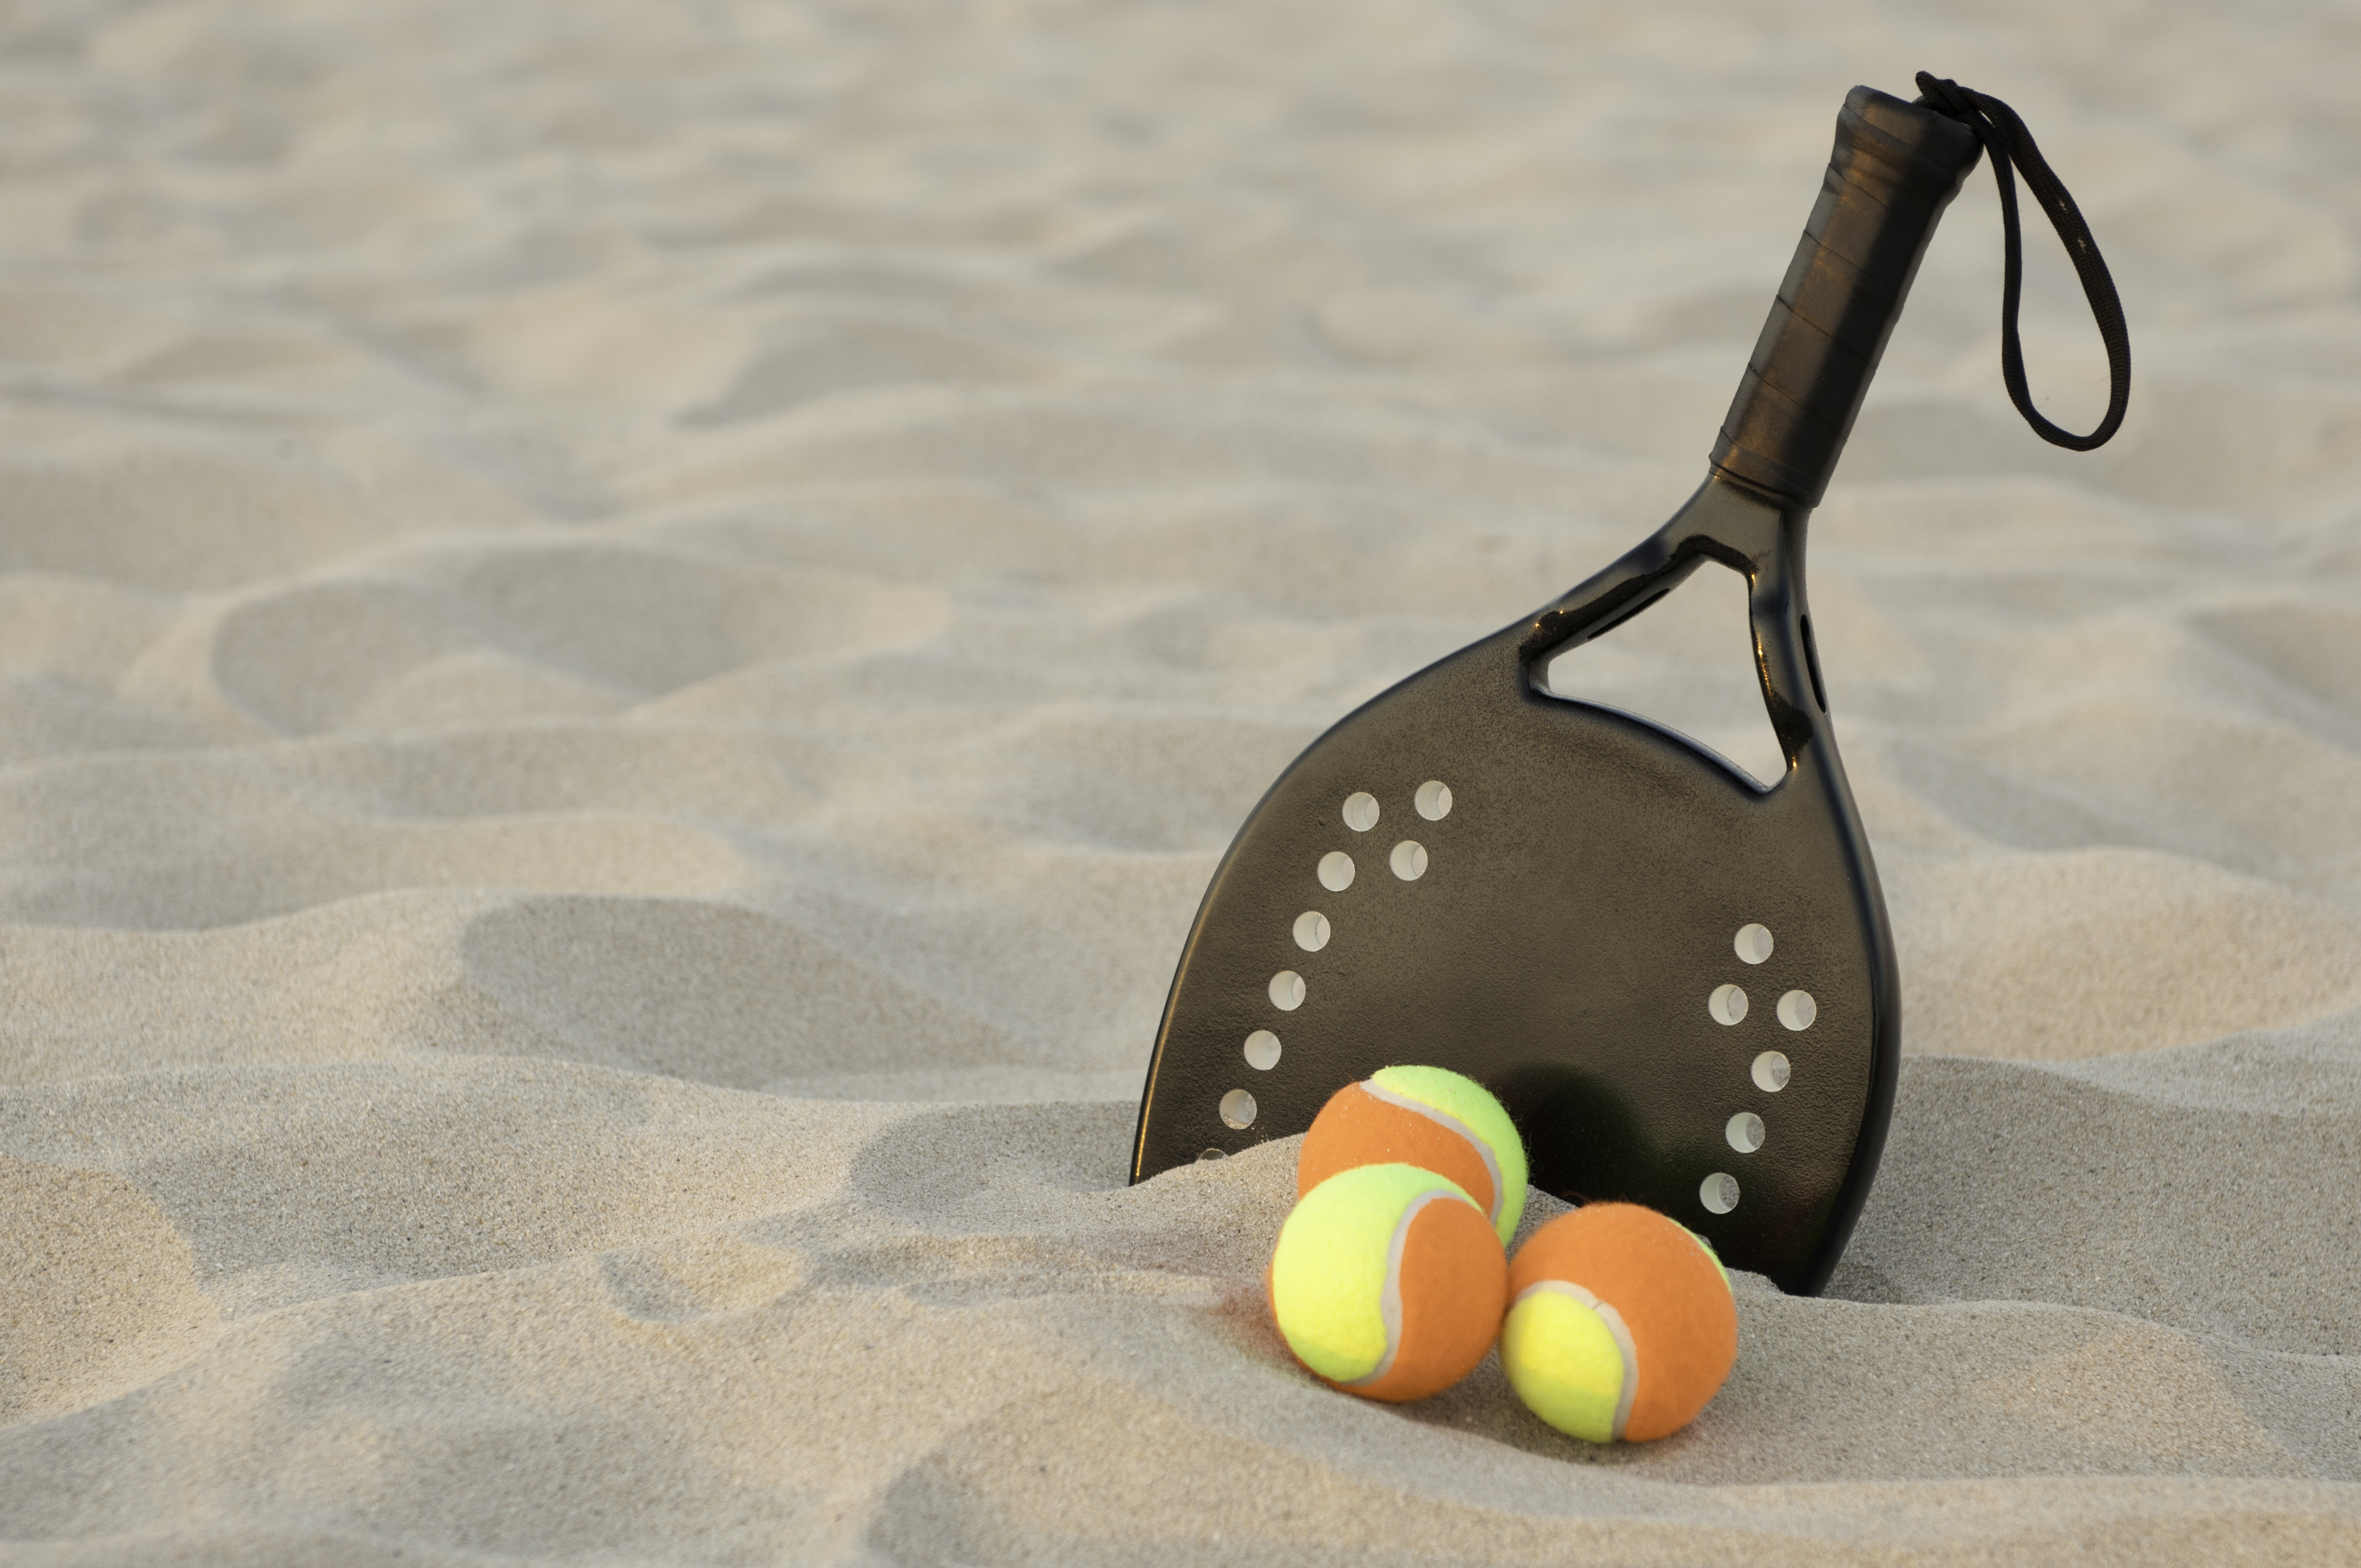 Beach Tennis - Conheça as regras desse Esporte agora Mesmo